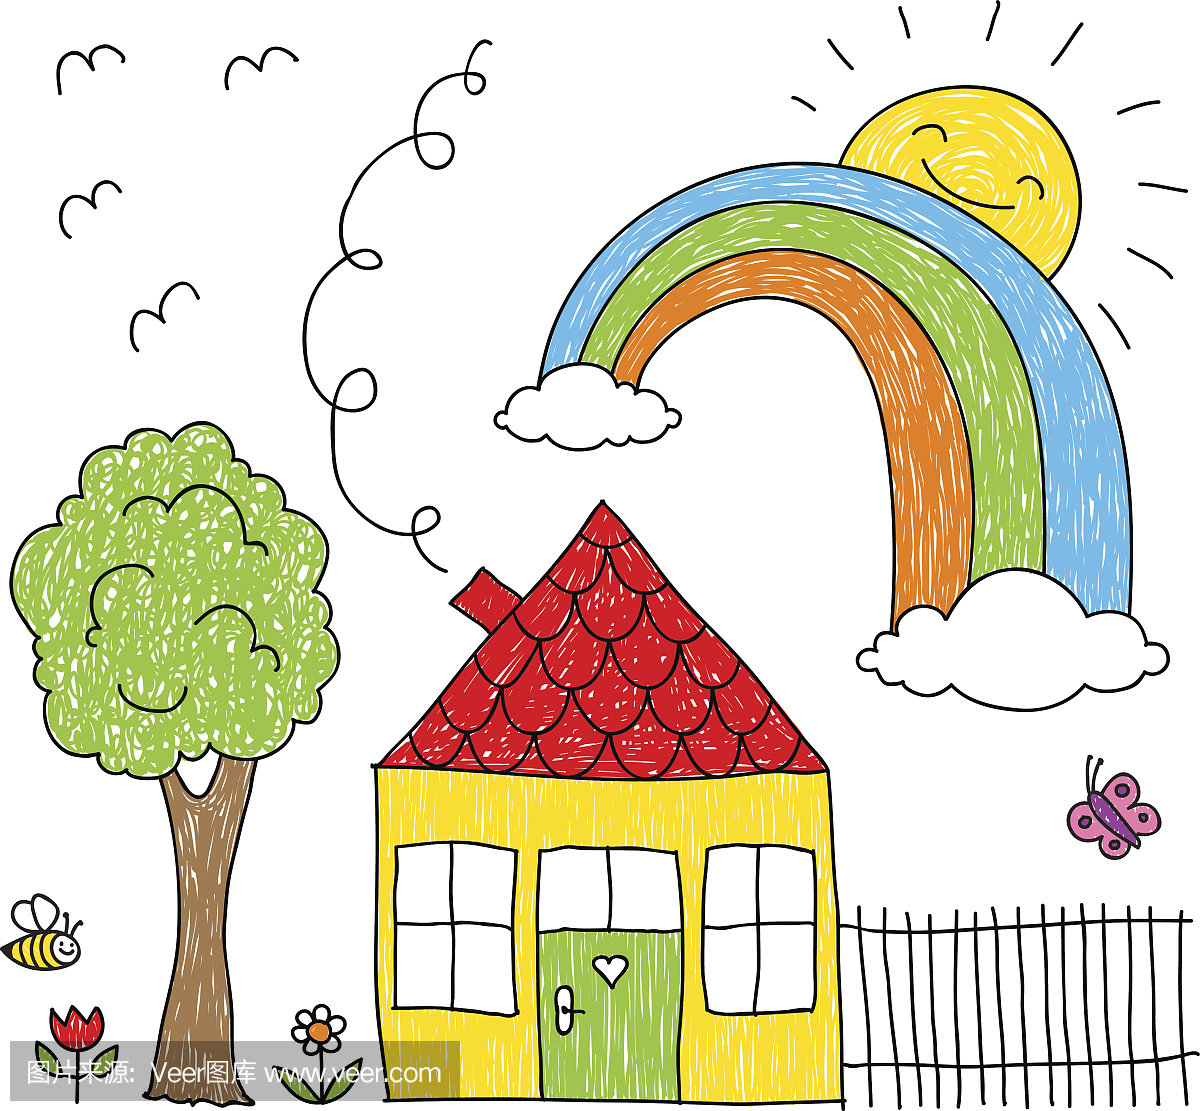 孩子画的房子,彩虹和树